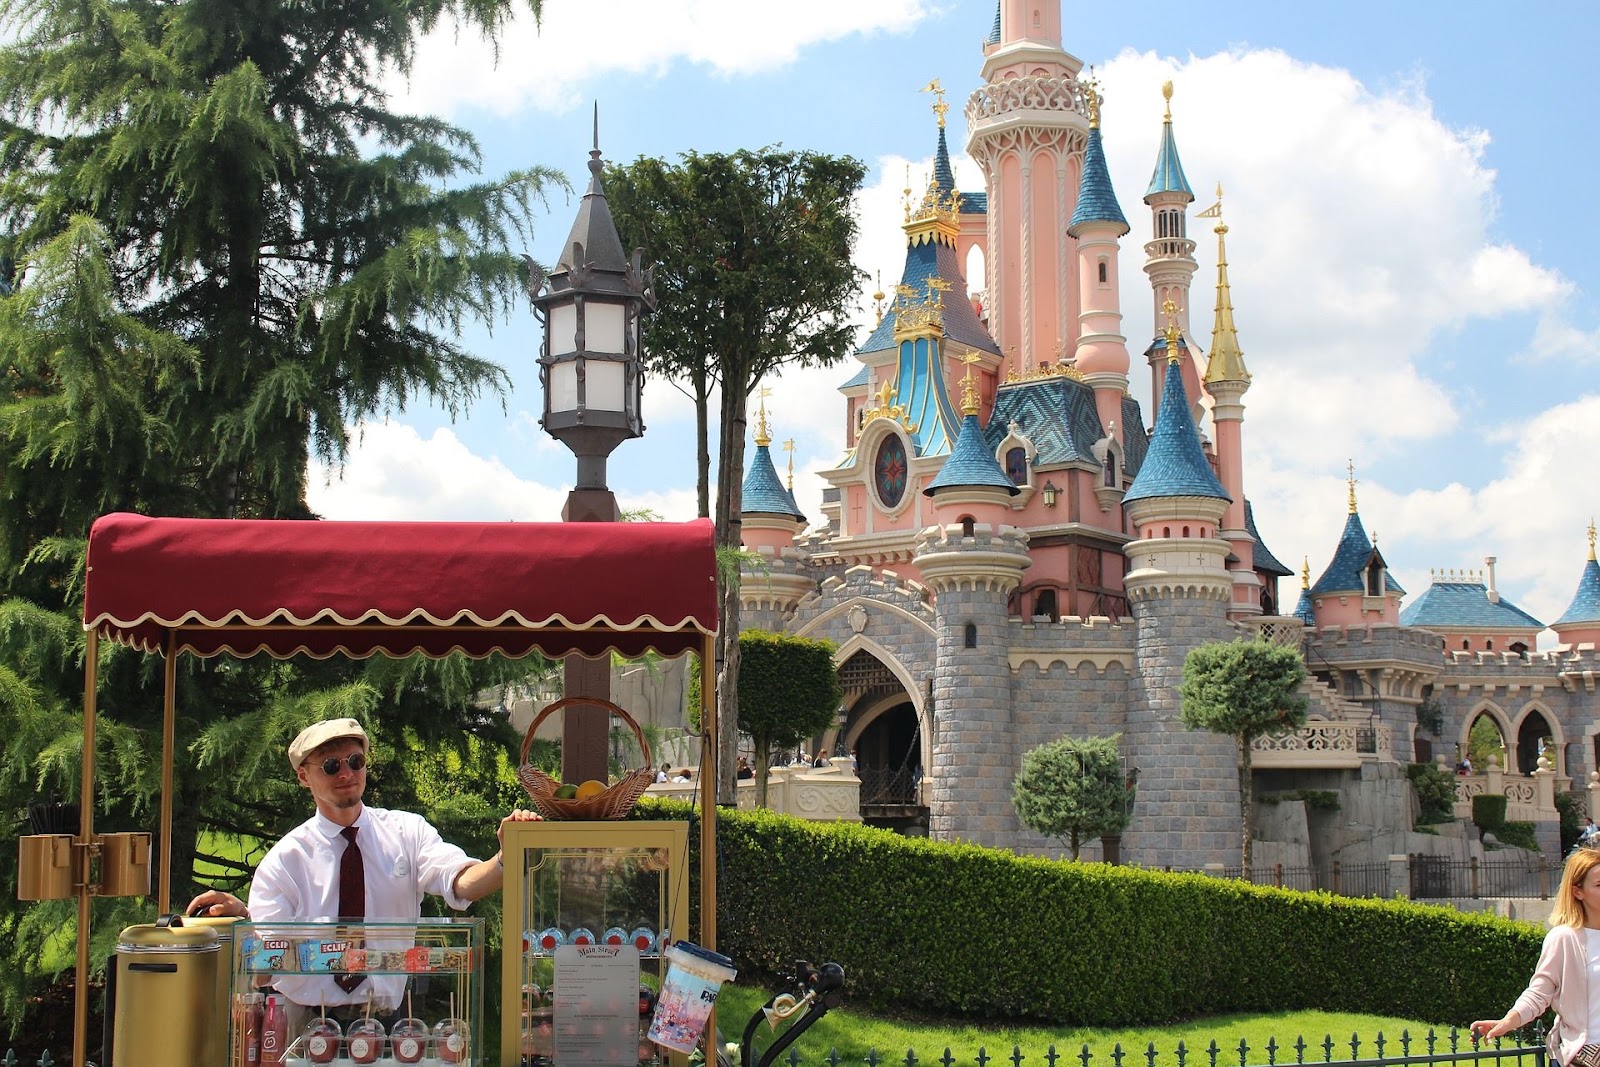 Disneyland attractions in Paris 